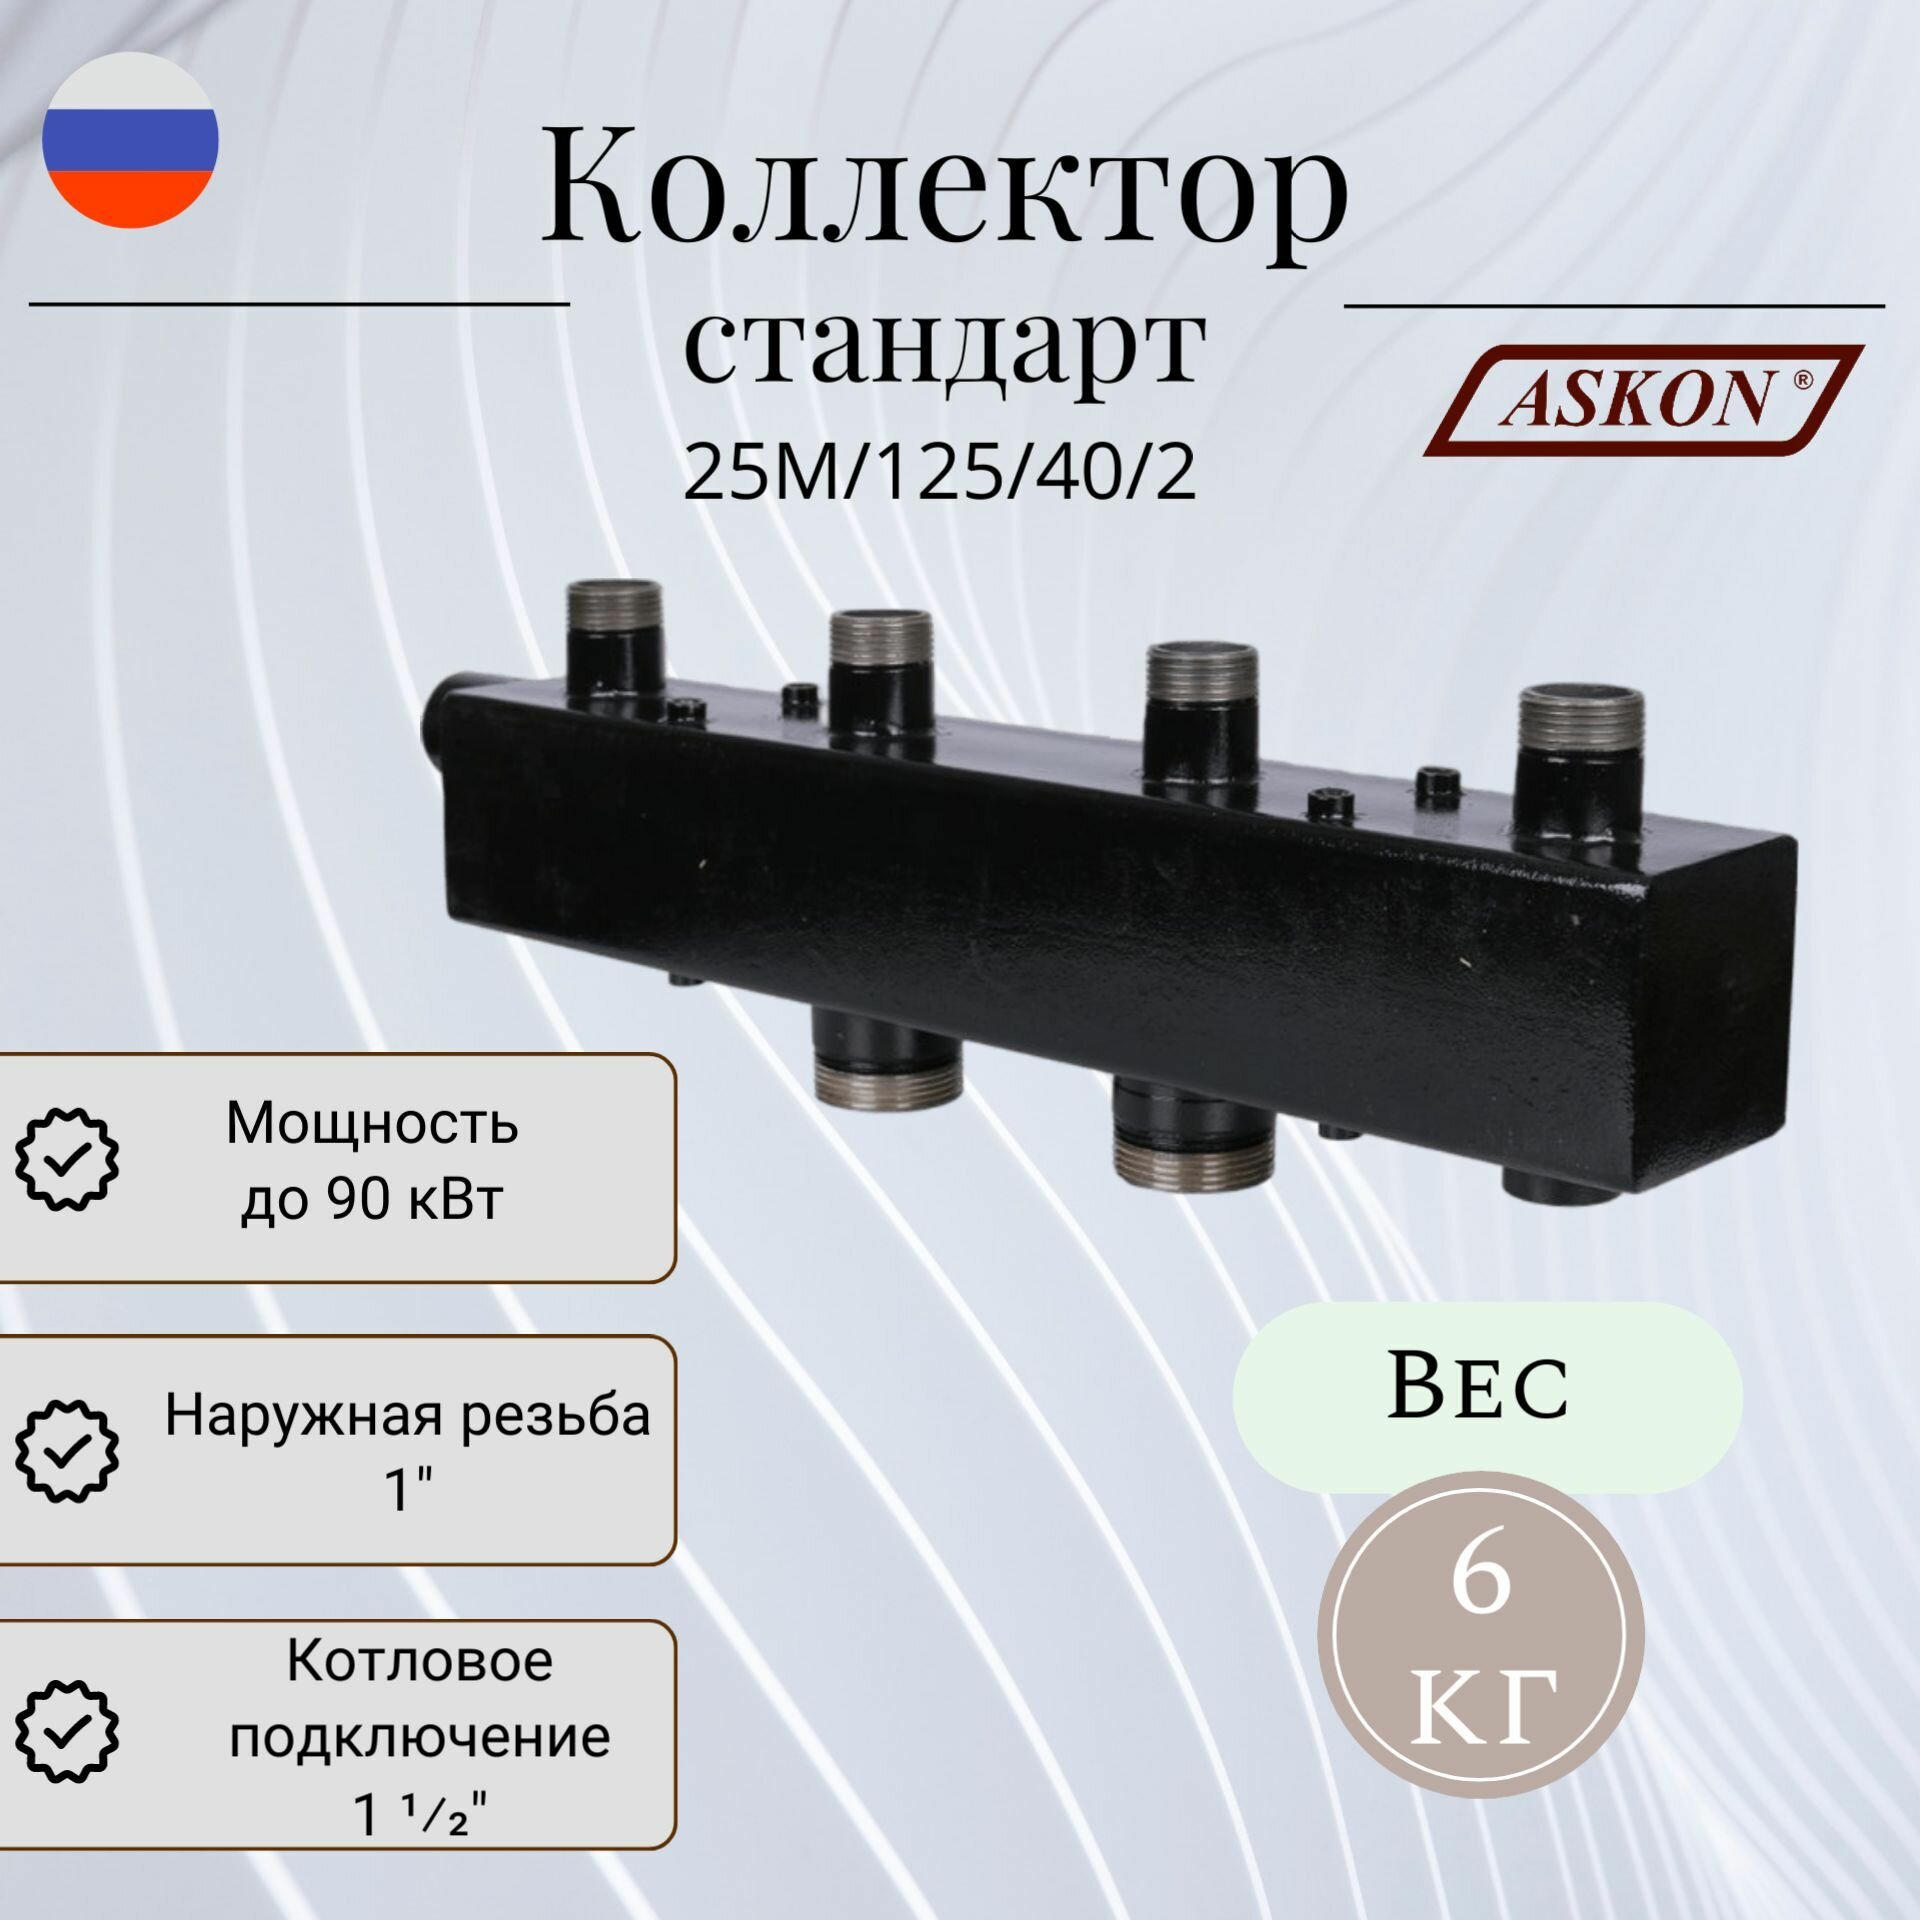 Коллектор для котельной разводки стандарт + ASKON 25М/125/40/2